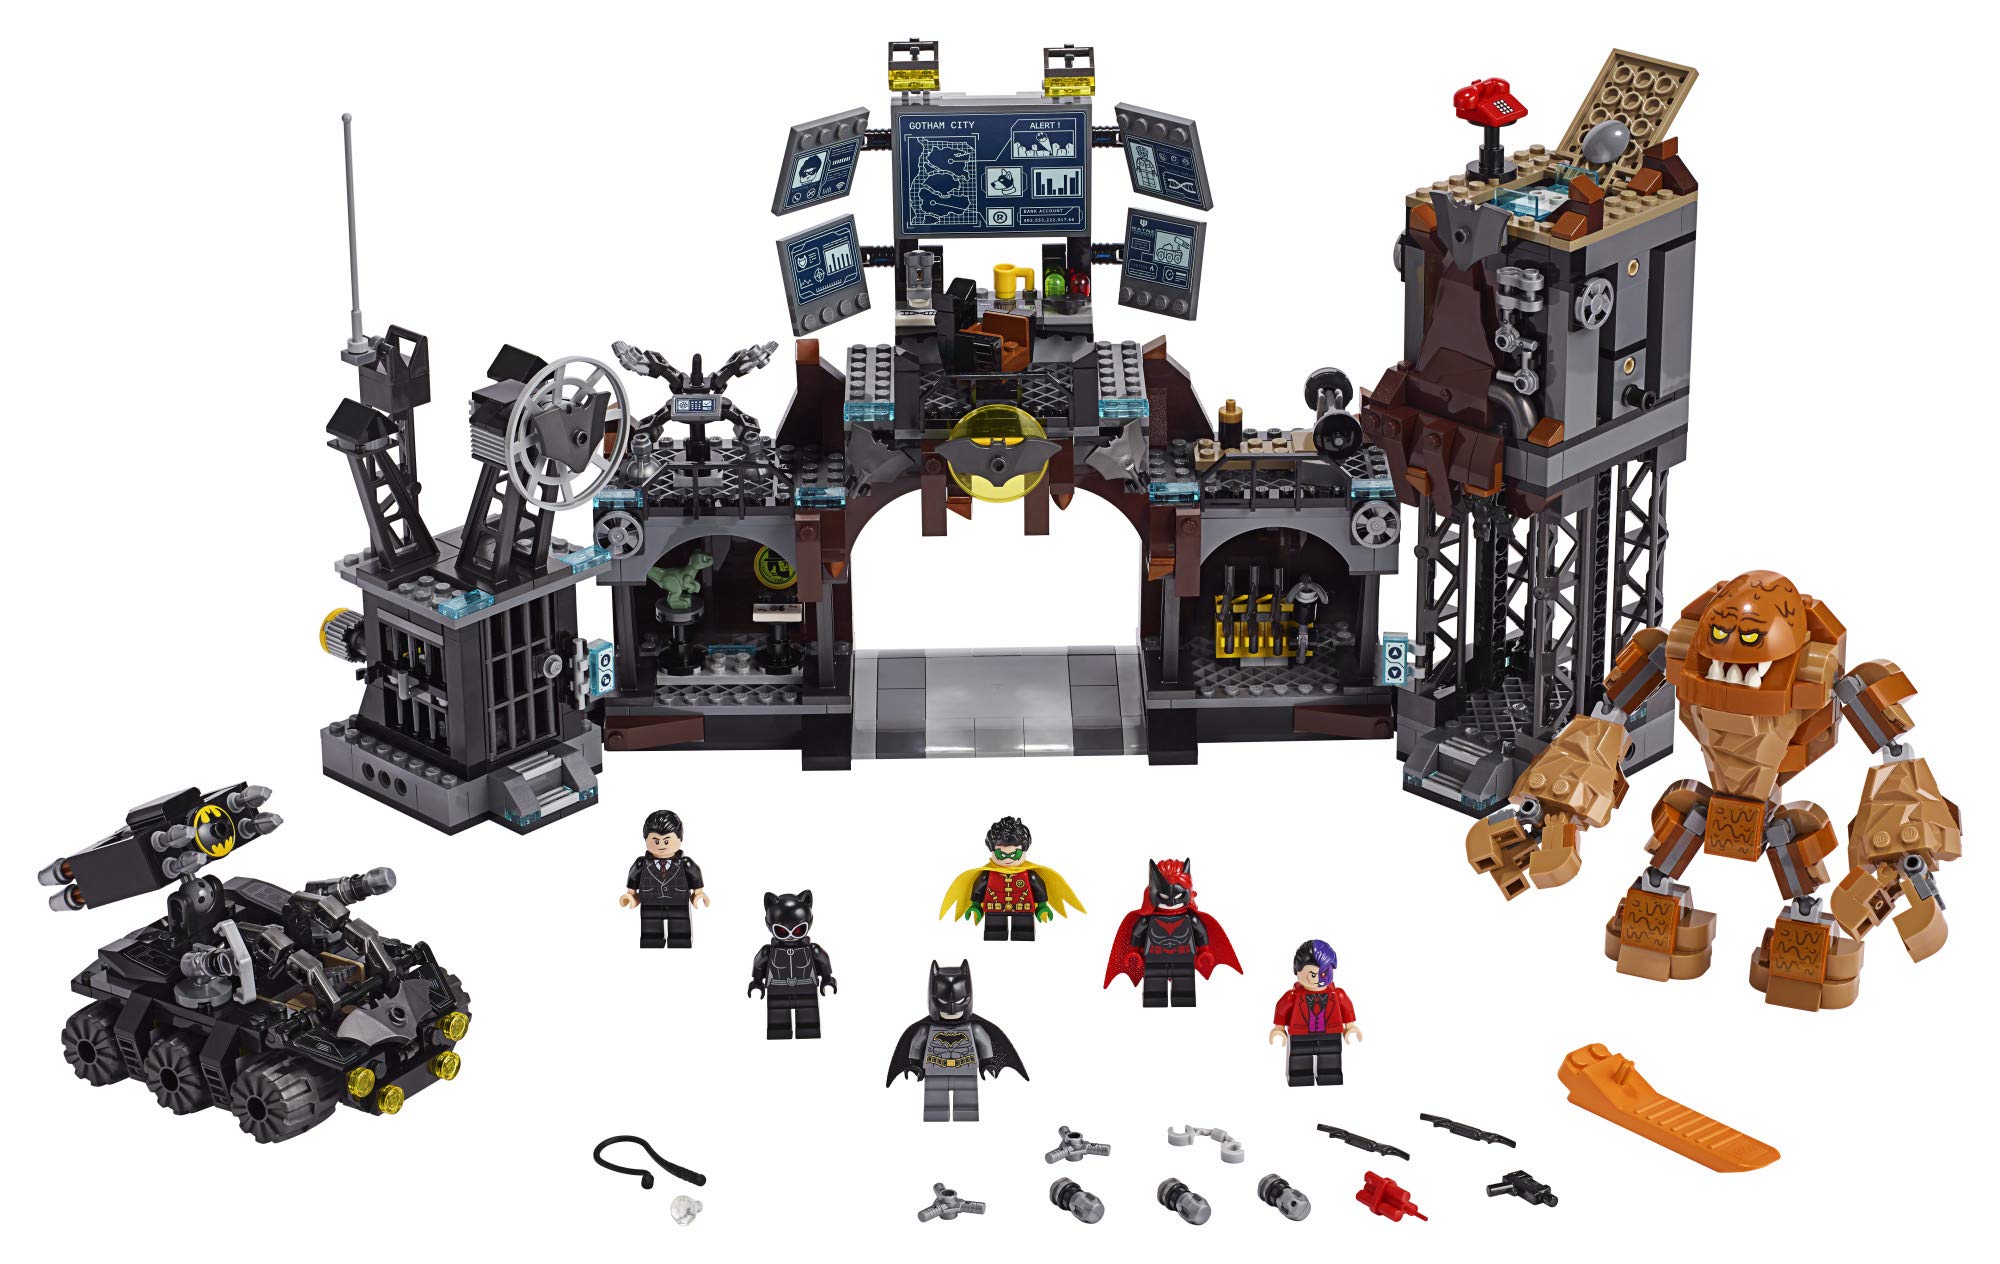 LEGO DC Batman Batcave Clayface Invasion 76122 Batman Toy Building Kit with Batman and Bruce Wayne Action Minifigures, Popular DC Superhero Toy (1037 Pieces)